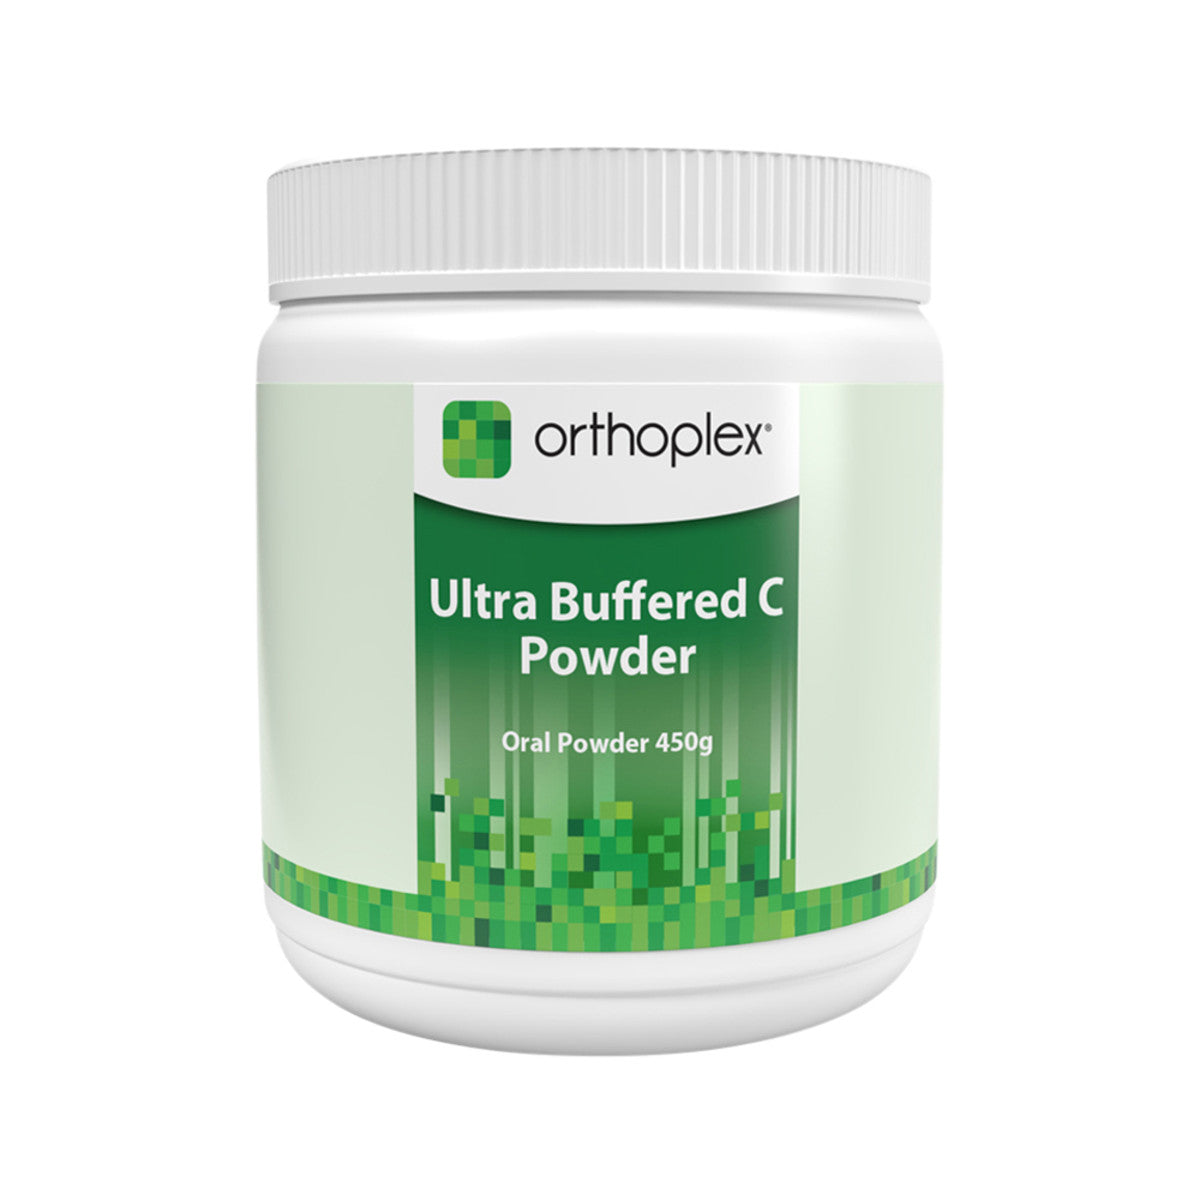 Orthoplex Ultra Buffered C Powder